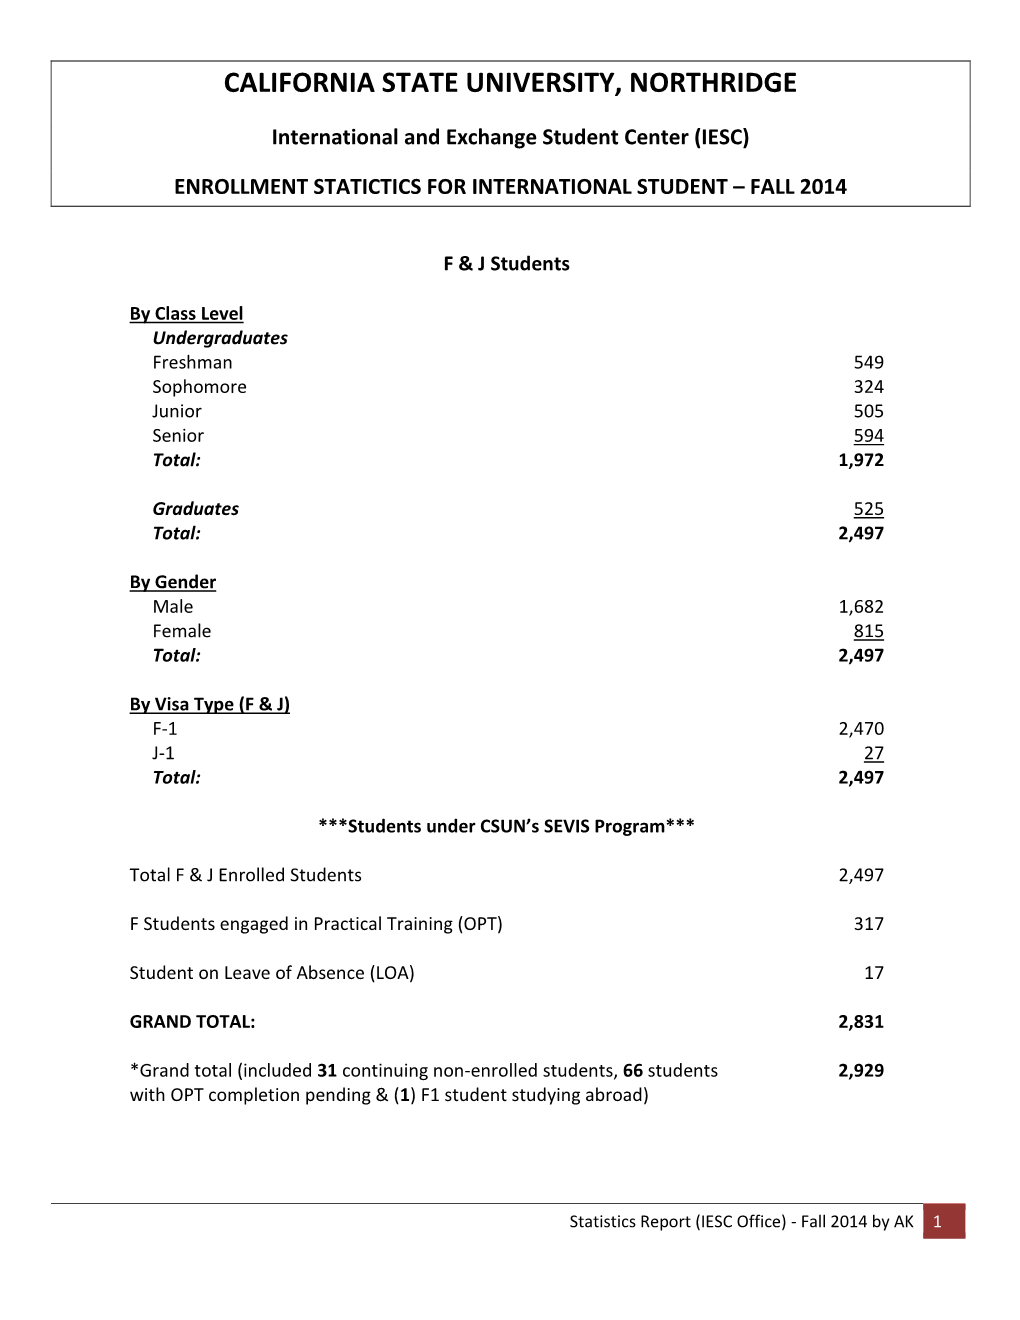 Fall 2014 Enrollment Statistics